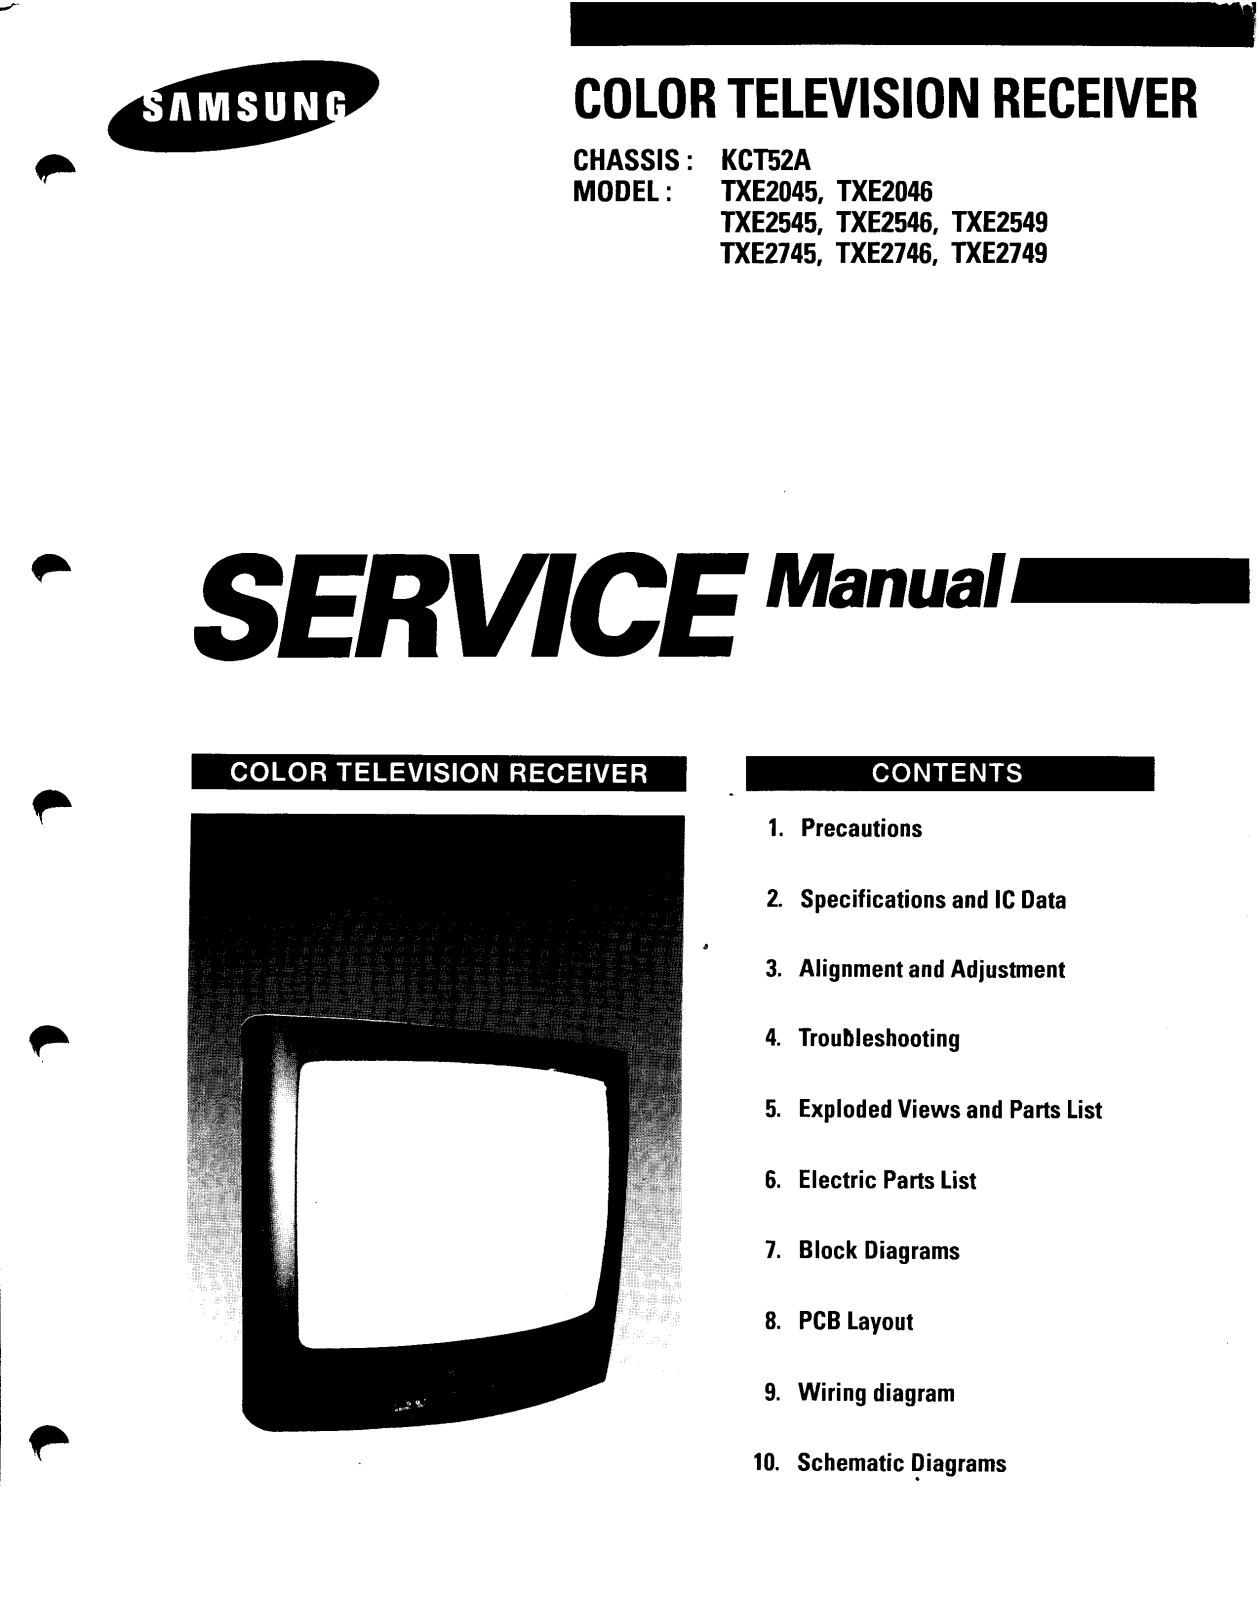 SAMSUNG TXE2046, TXE2545, TXE2546, TXE2549, TXE27 Service Manual